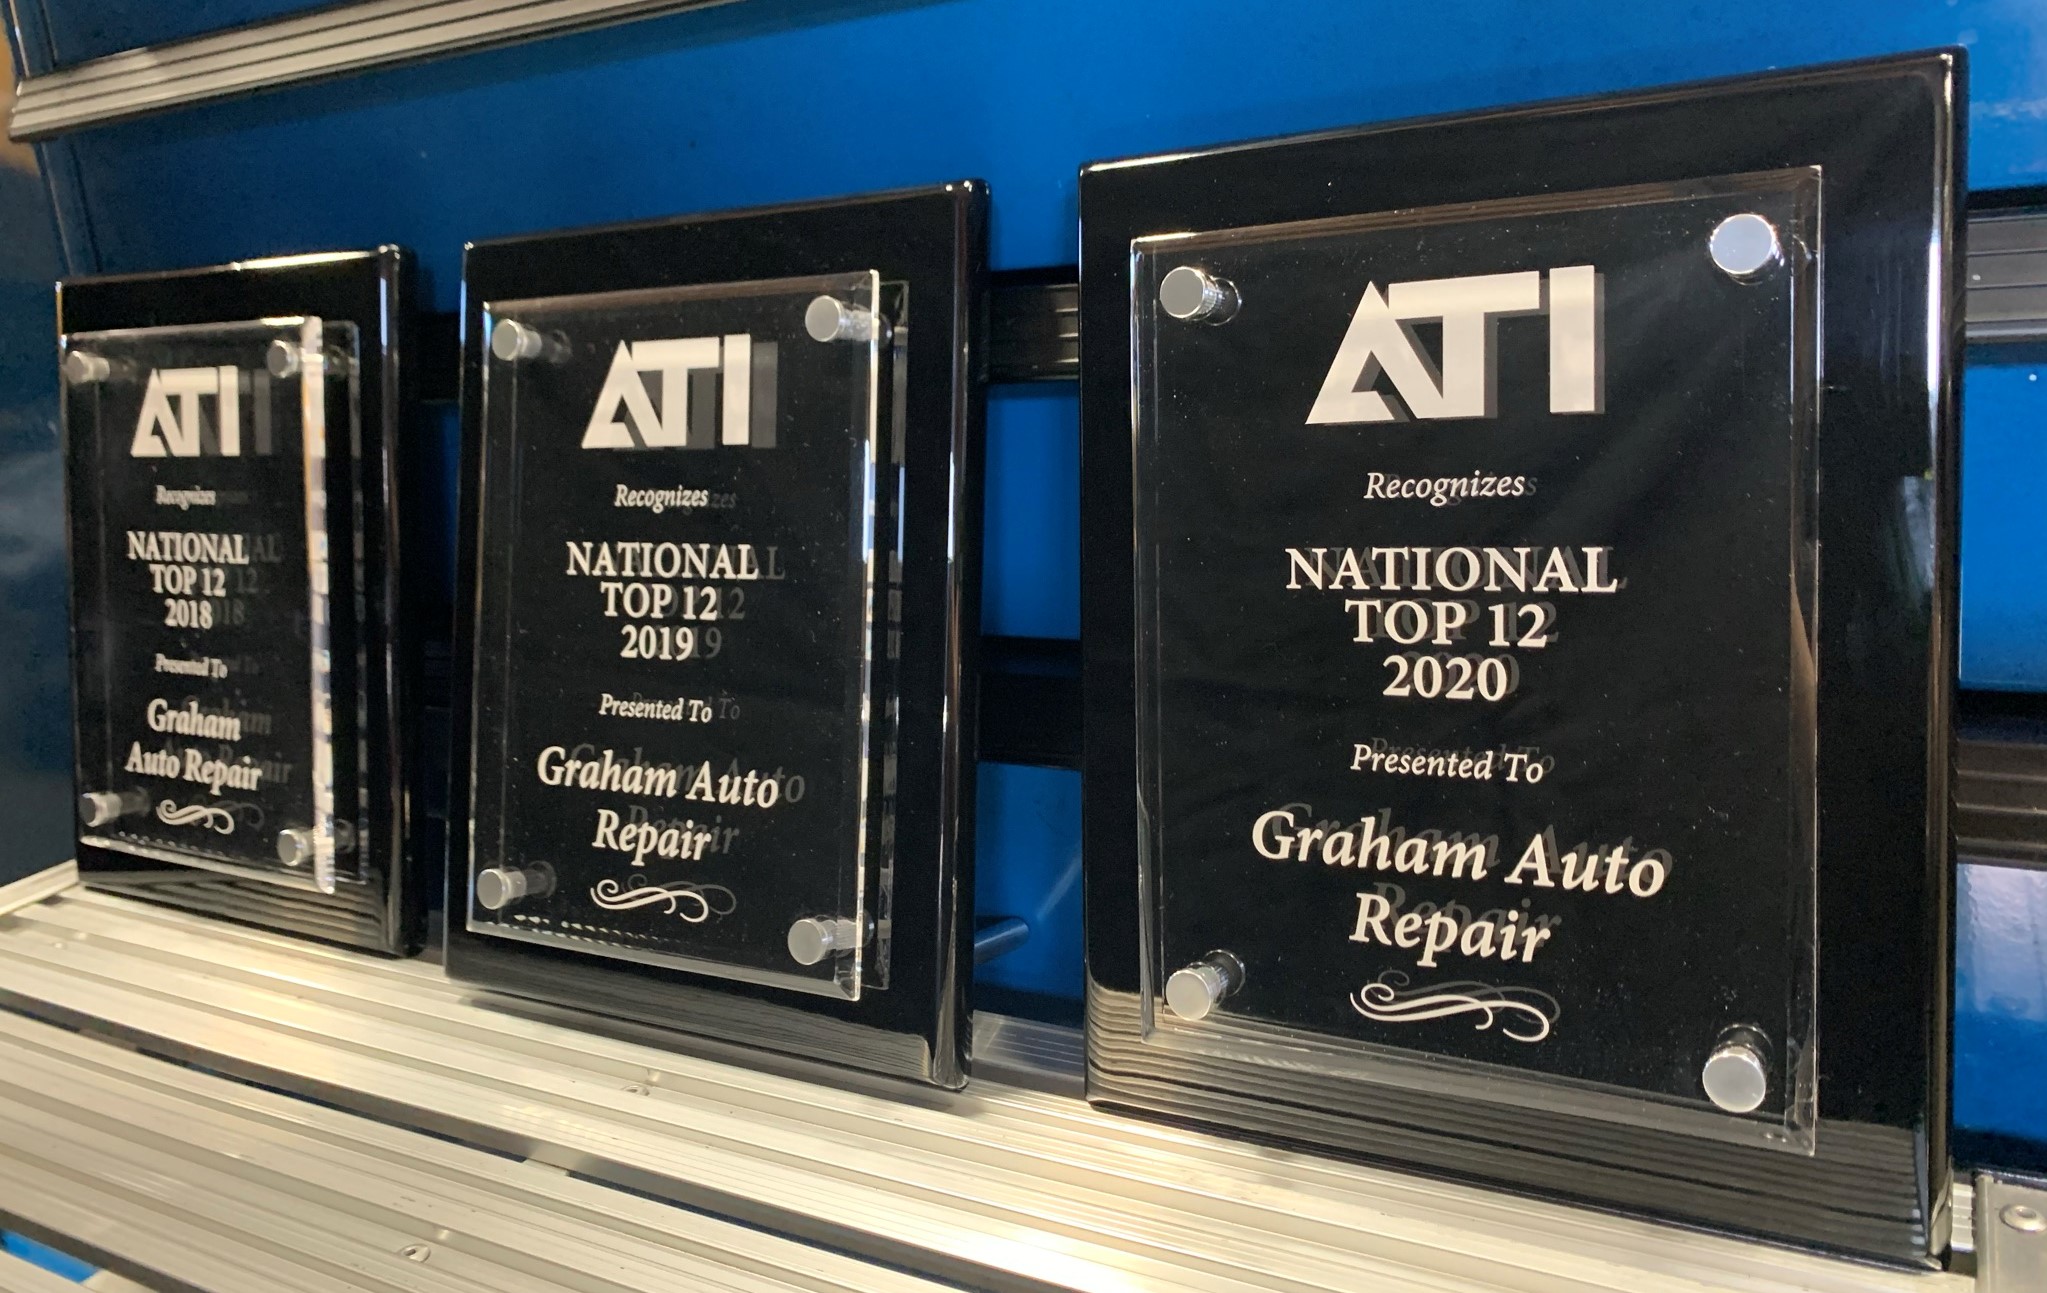 Graham Auto Repair Top Shop - Automotive Training Institute